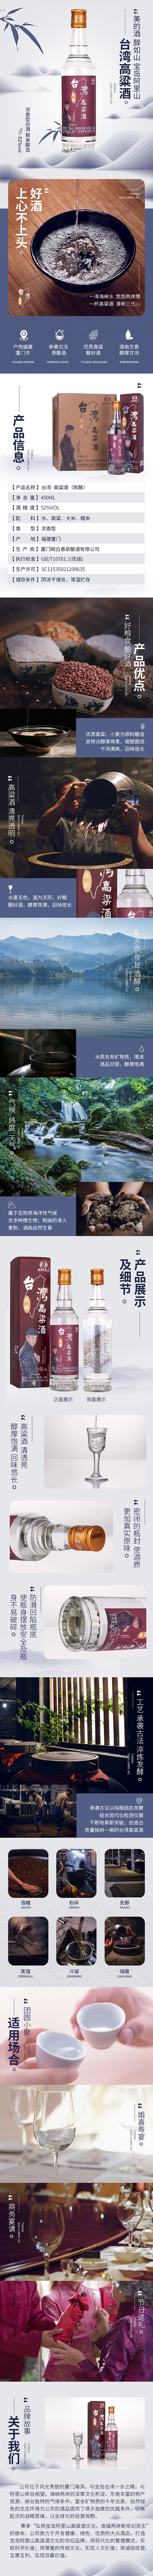 台湾阿里山高粱酒